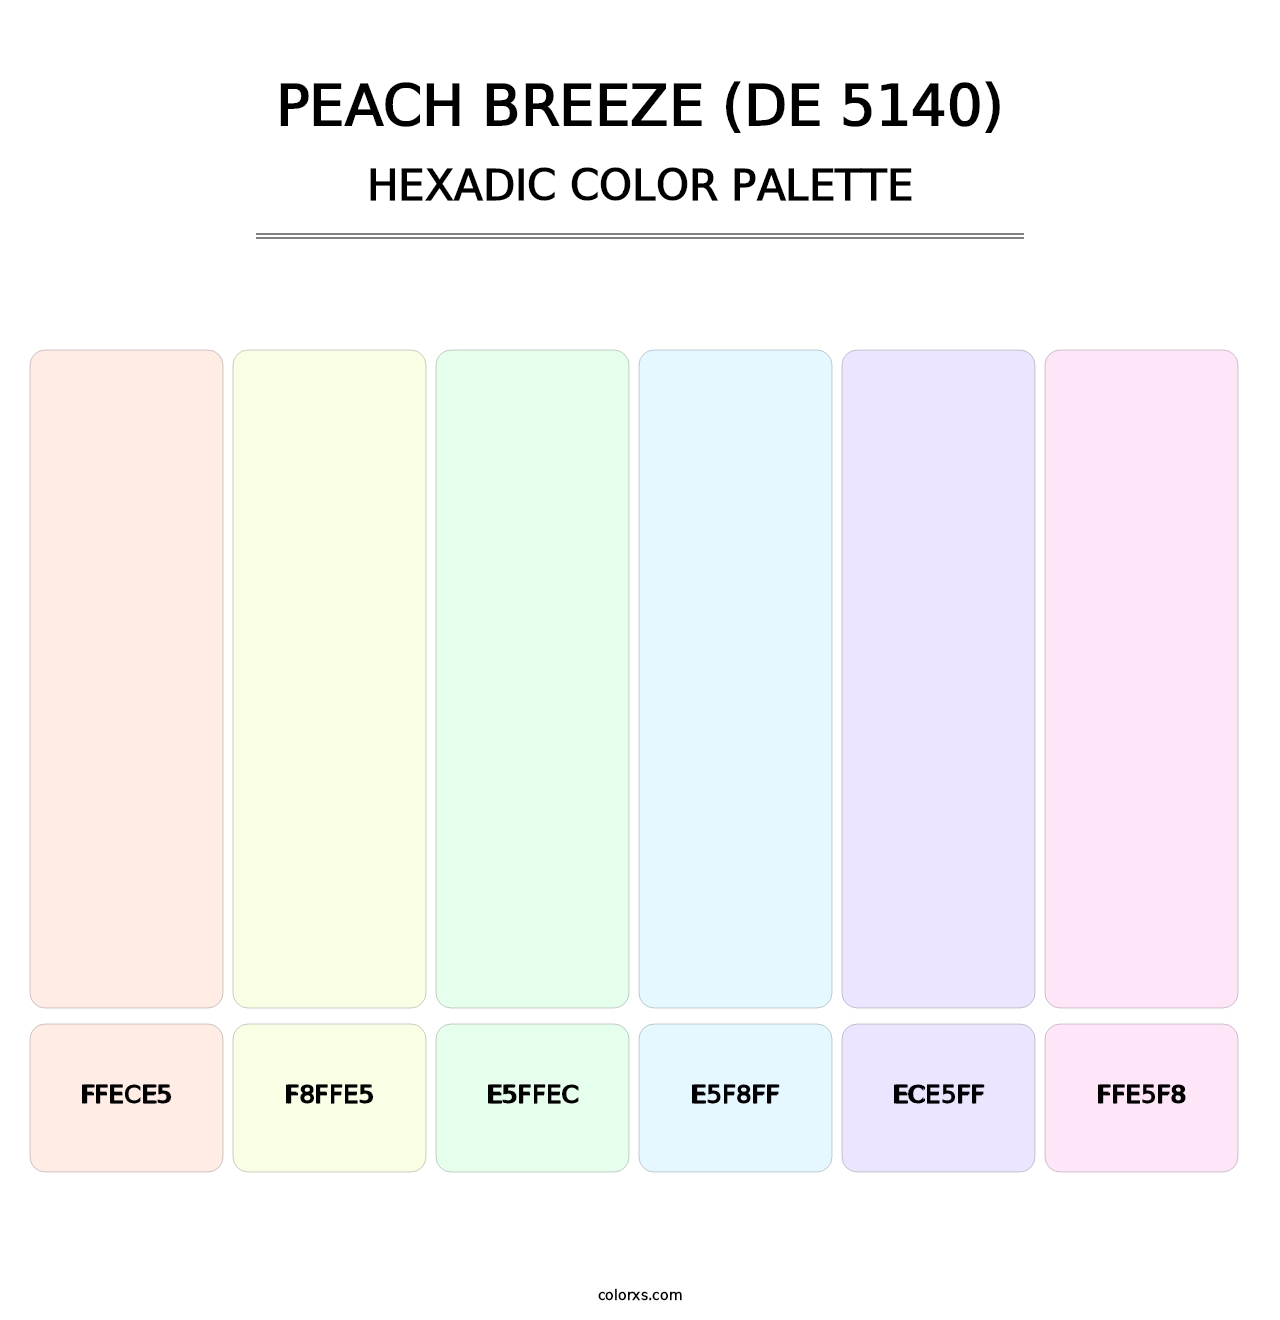 Peach Breeze (DE 5140) - Hexadic Color Palette